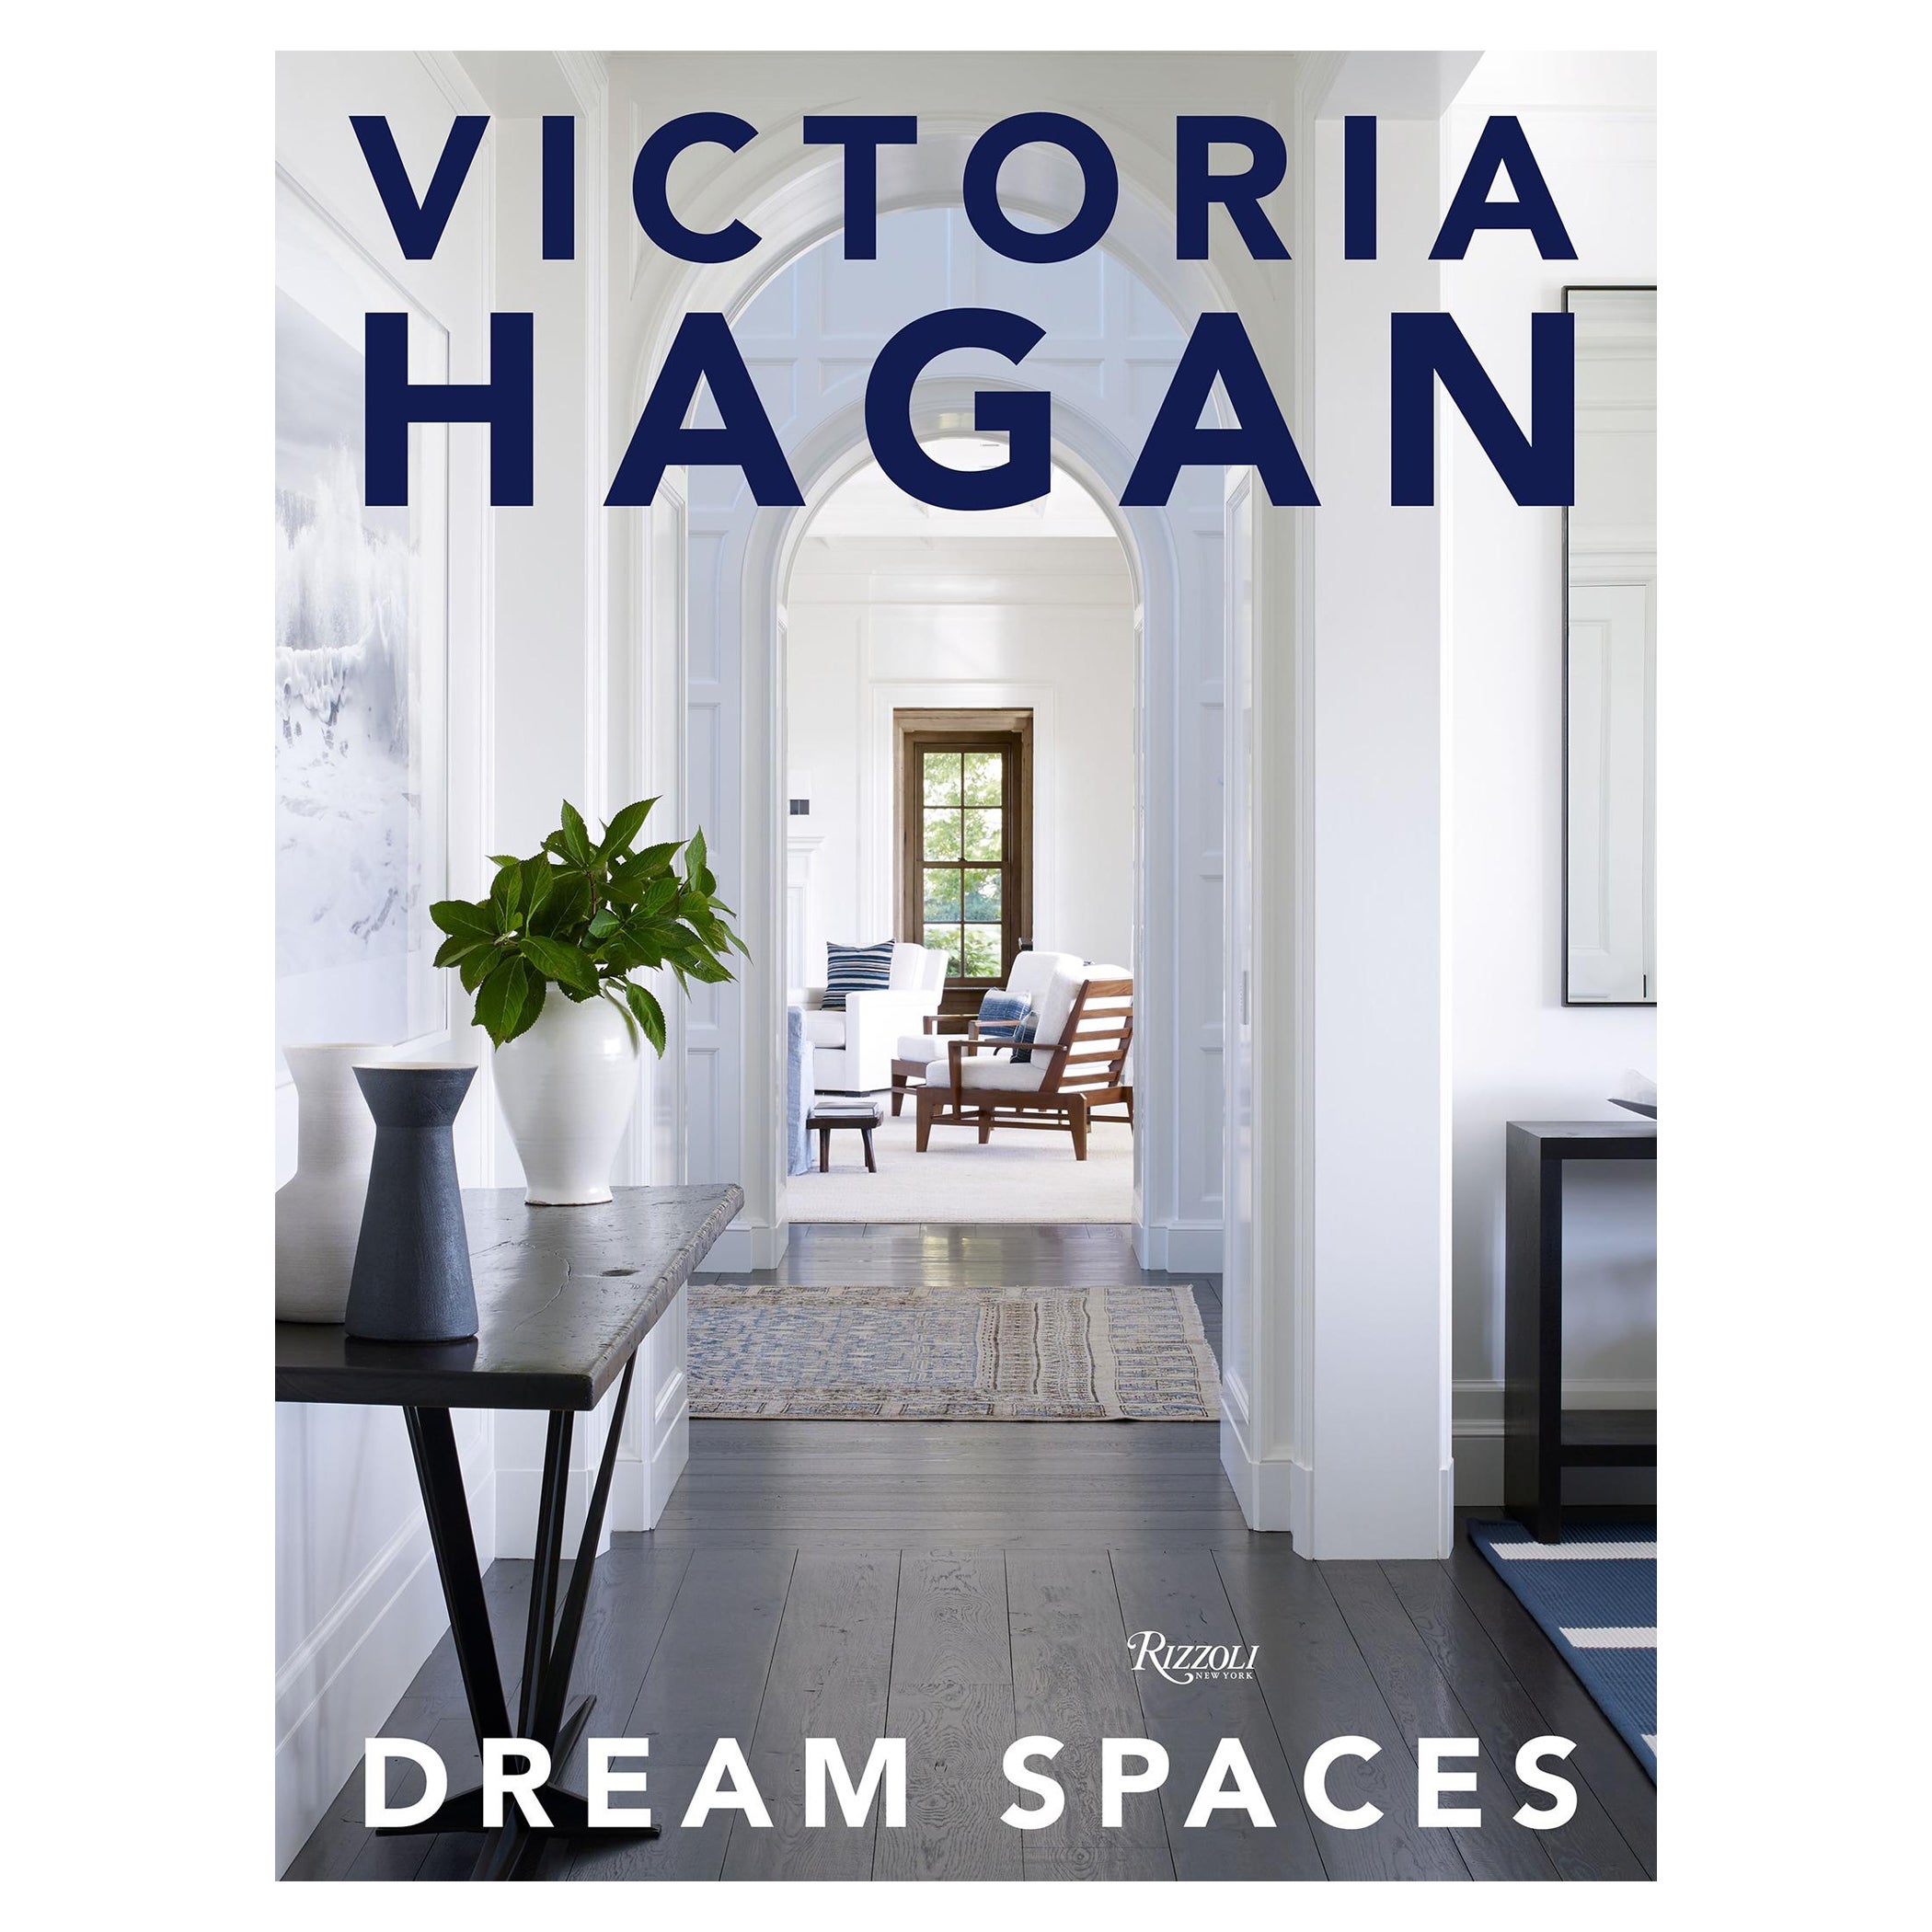 Victoria Hagan Dream Spaces